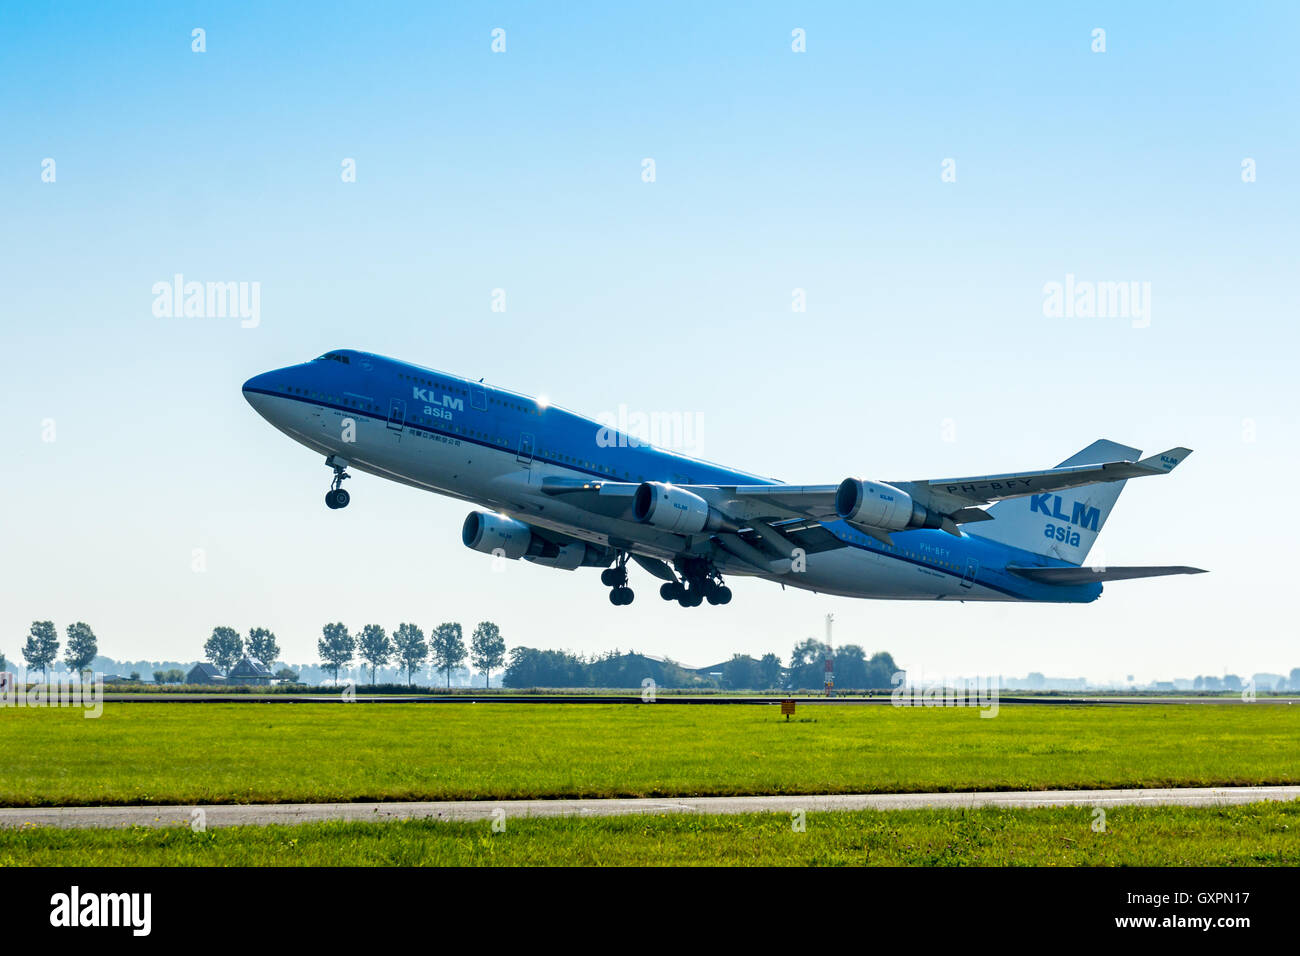 El aeropuerto de Schiphol, el Polderbaan Holanda - Sep 20, 2016: Boeing 747 de Air France KLM despegando en el Aeropuerto Schiphol de Ámsterdam Foto de stock